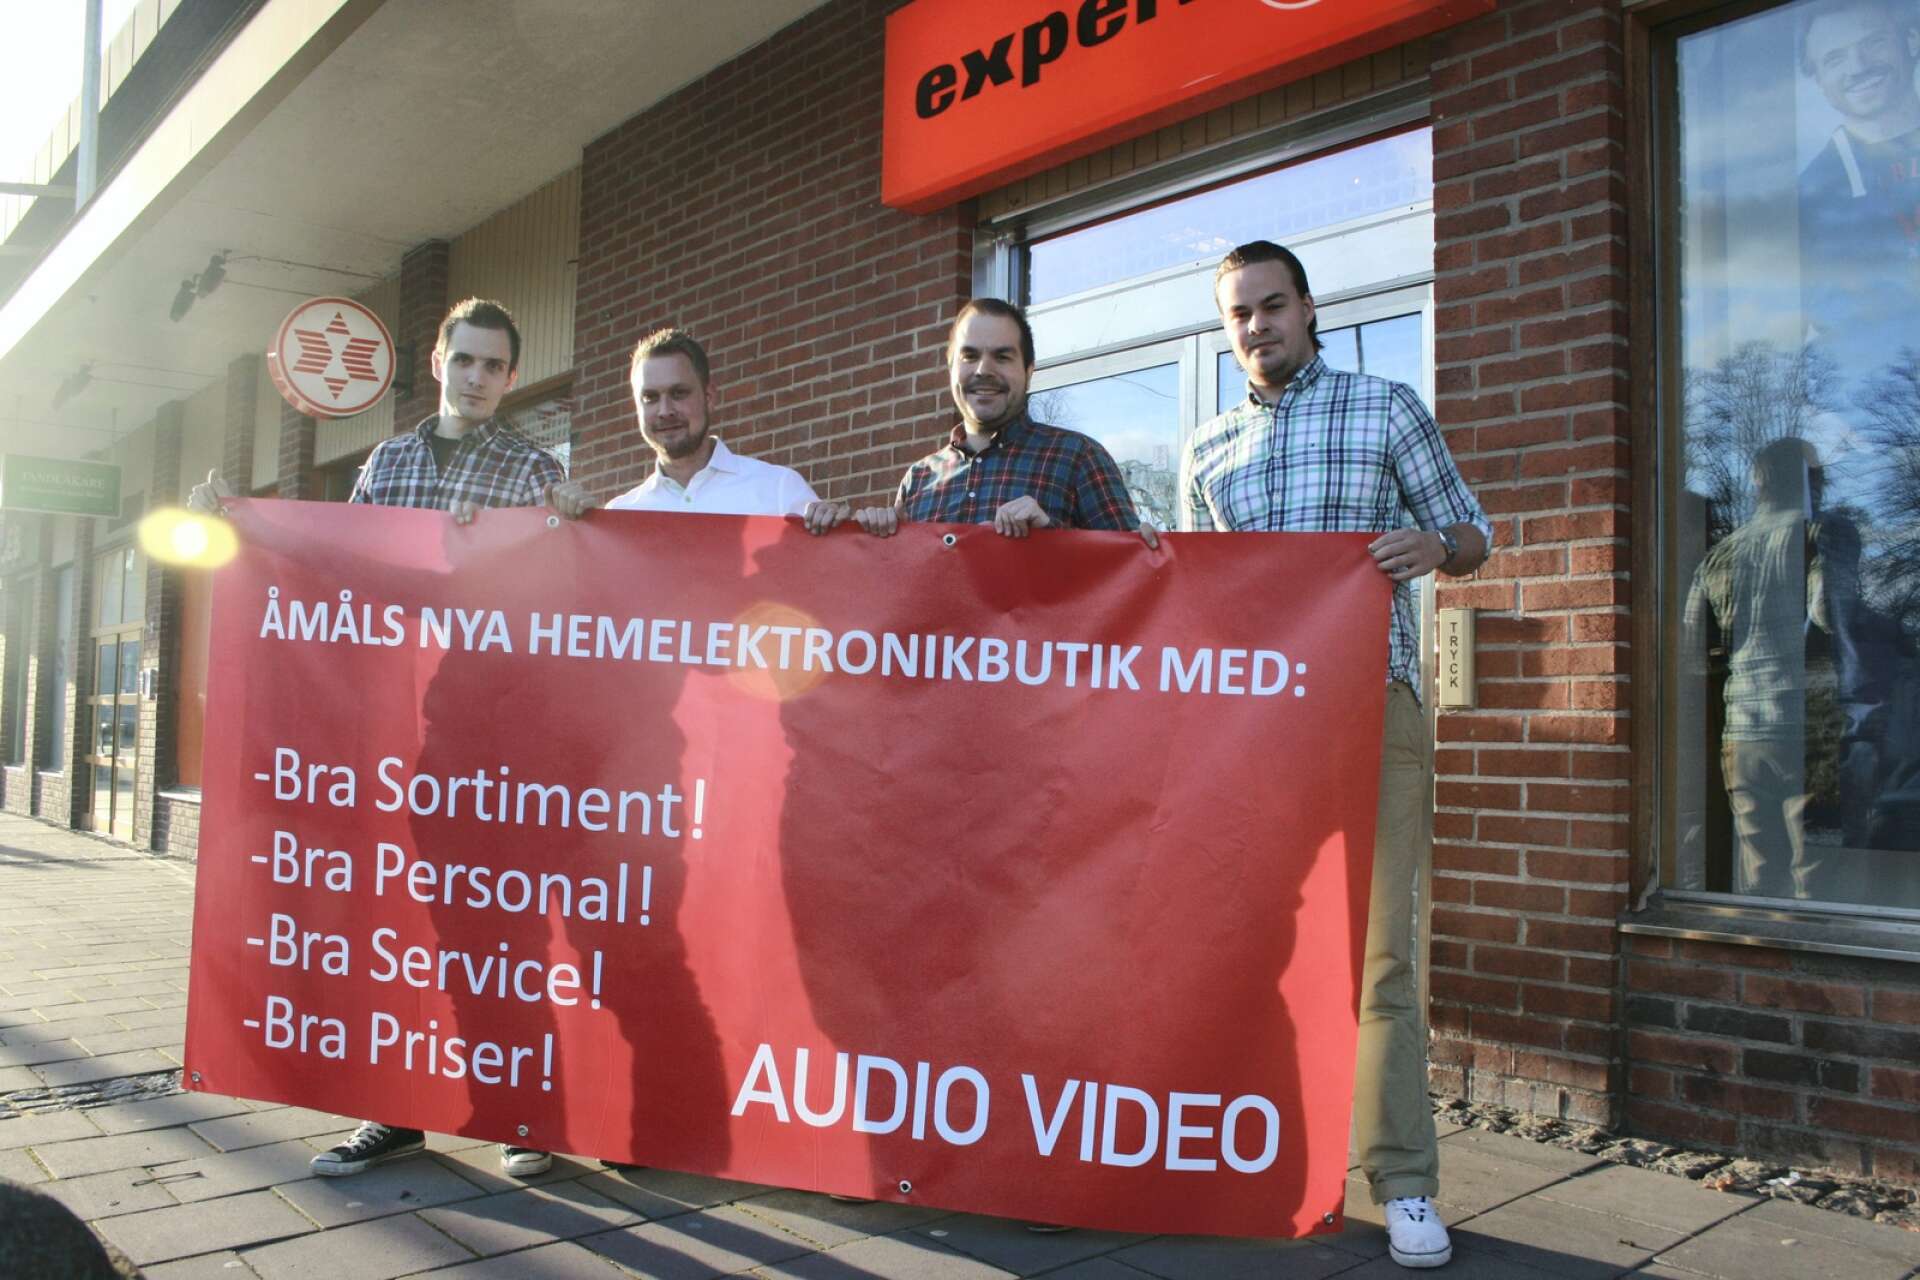 Richard Ternstedt, Roger Larsson, Lars Karlsson och Andreas Svanström när de startade hemelektronikföretaget tillsammans 2012. De tog över Experts butiker i Åmål och Säffle efter kedjans konkurs.